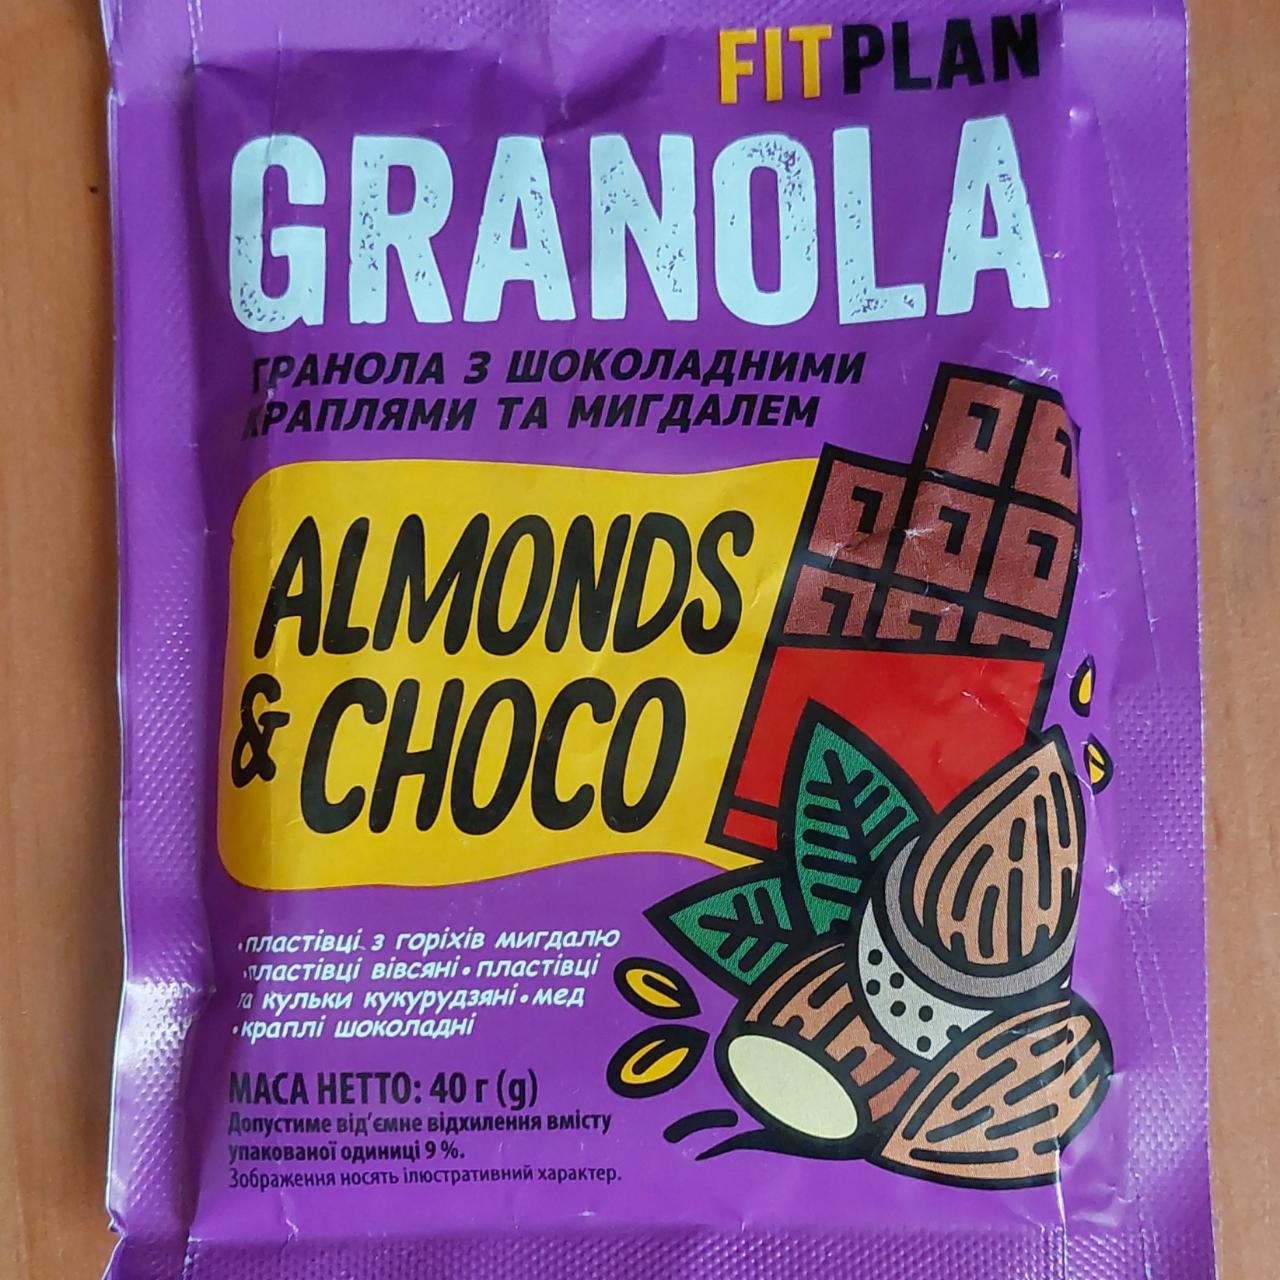 Фото - Гранола с шоколадными каплями и миндалем Almonds & Choco Granola Fit Plan Vale